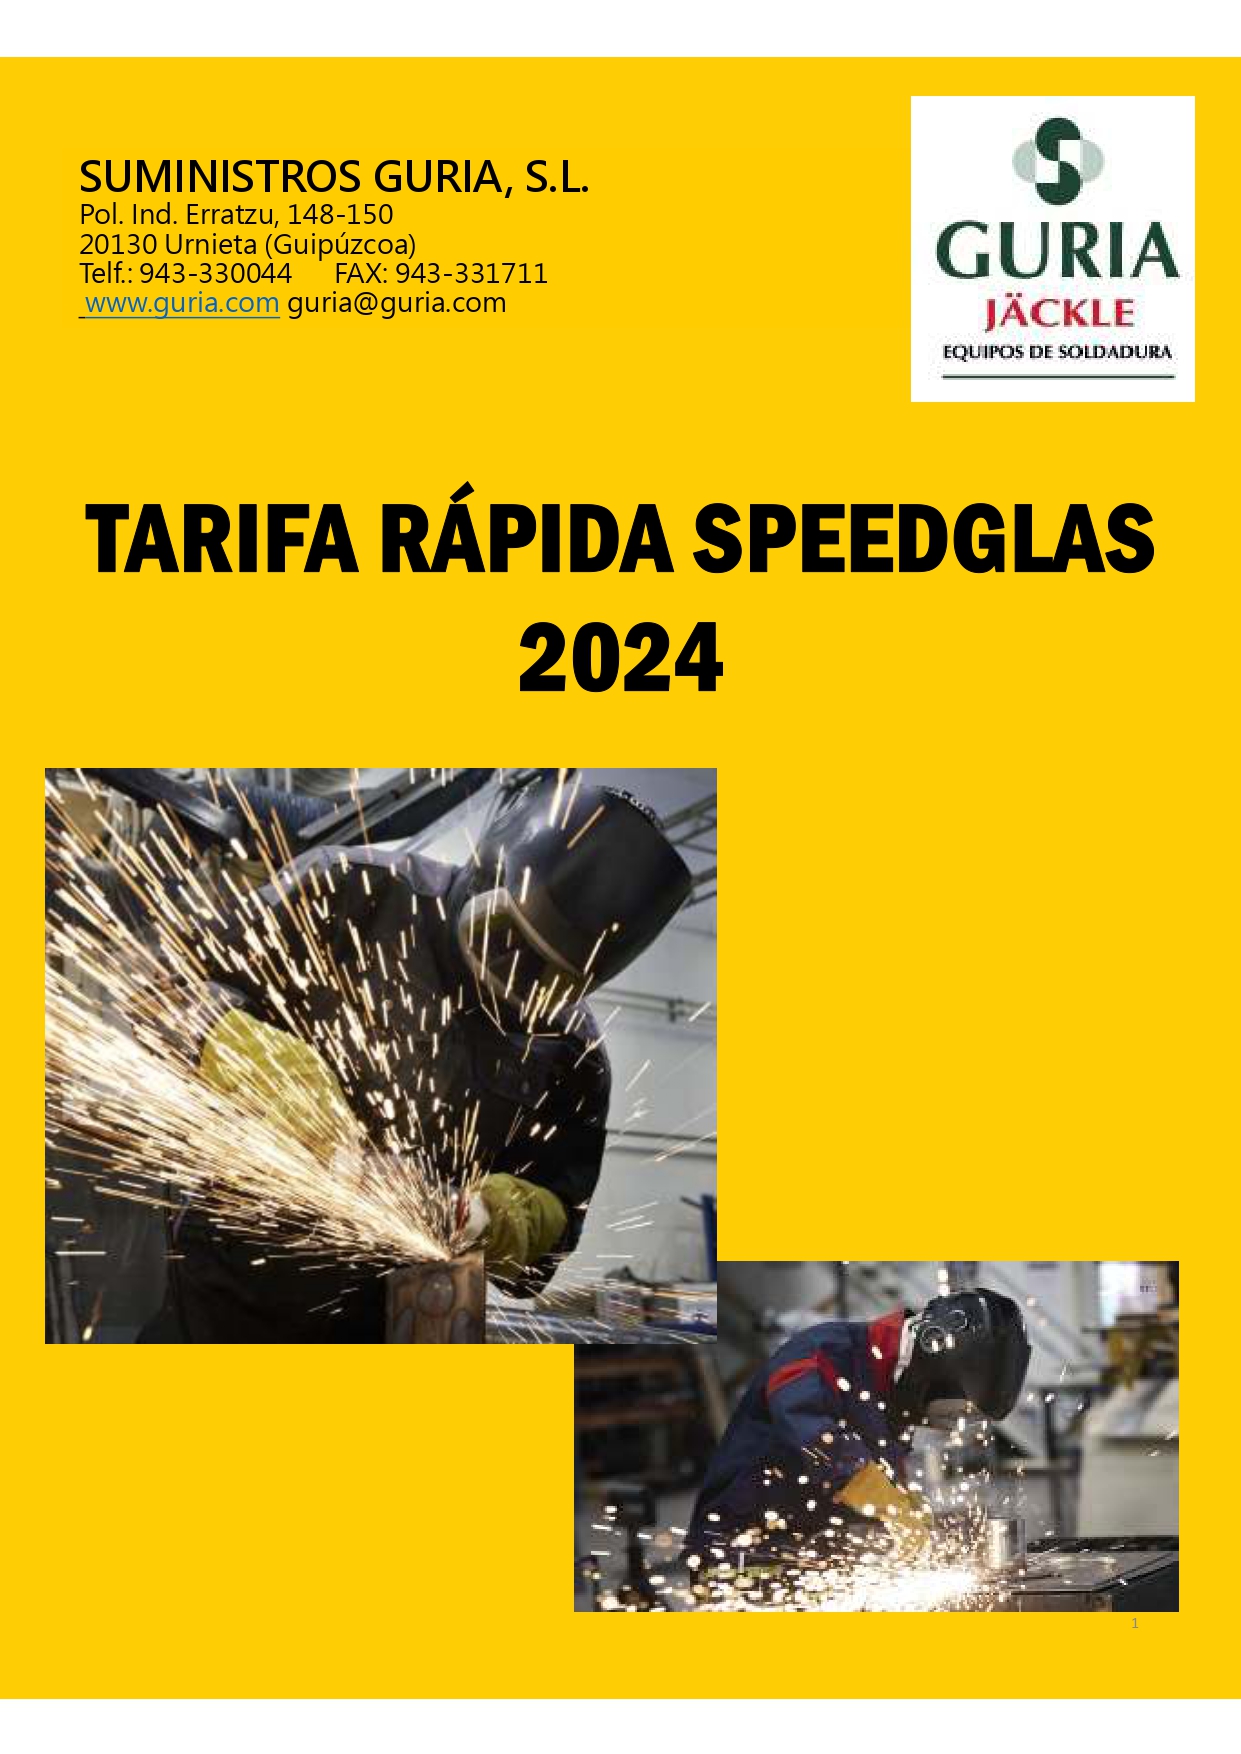 Tarifa Rapida Speedglas 2024